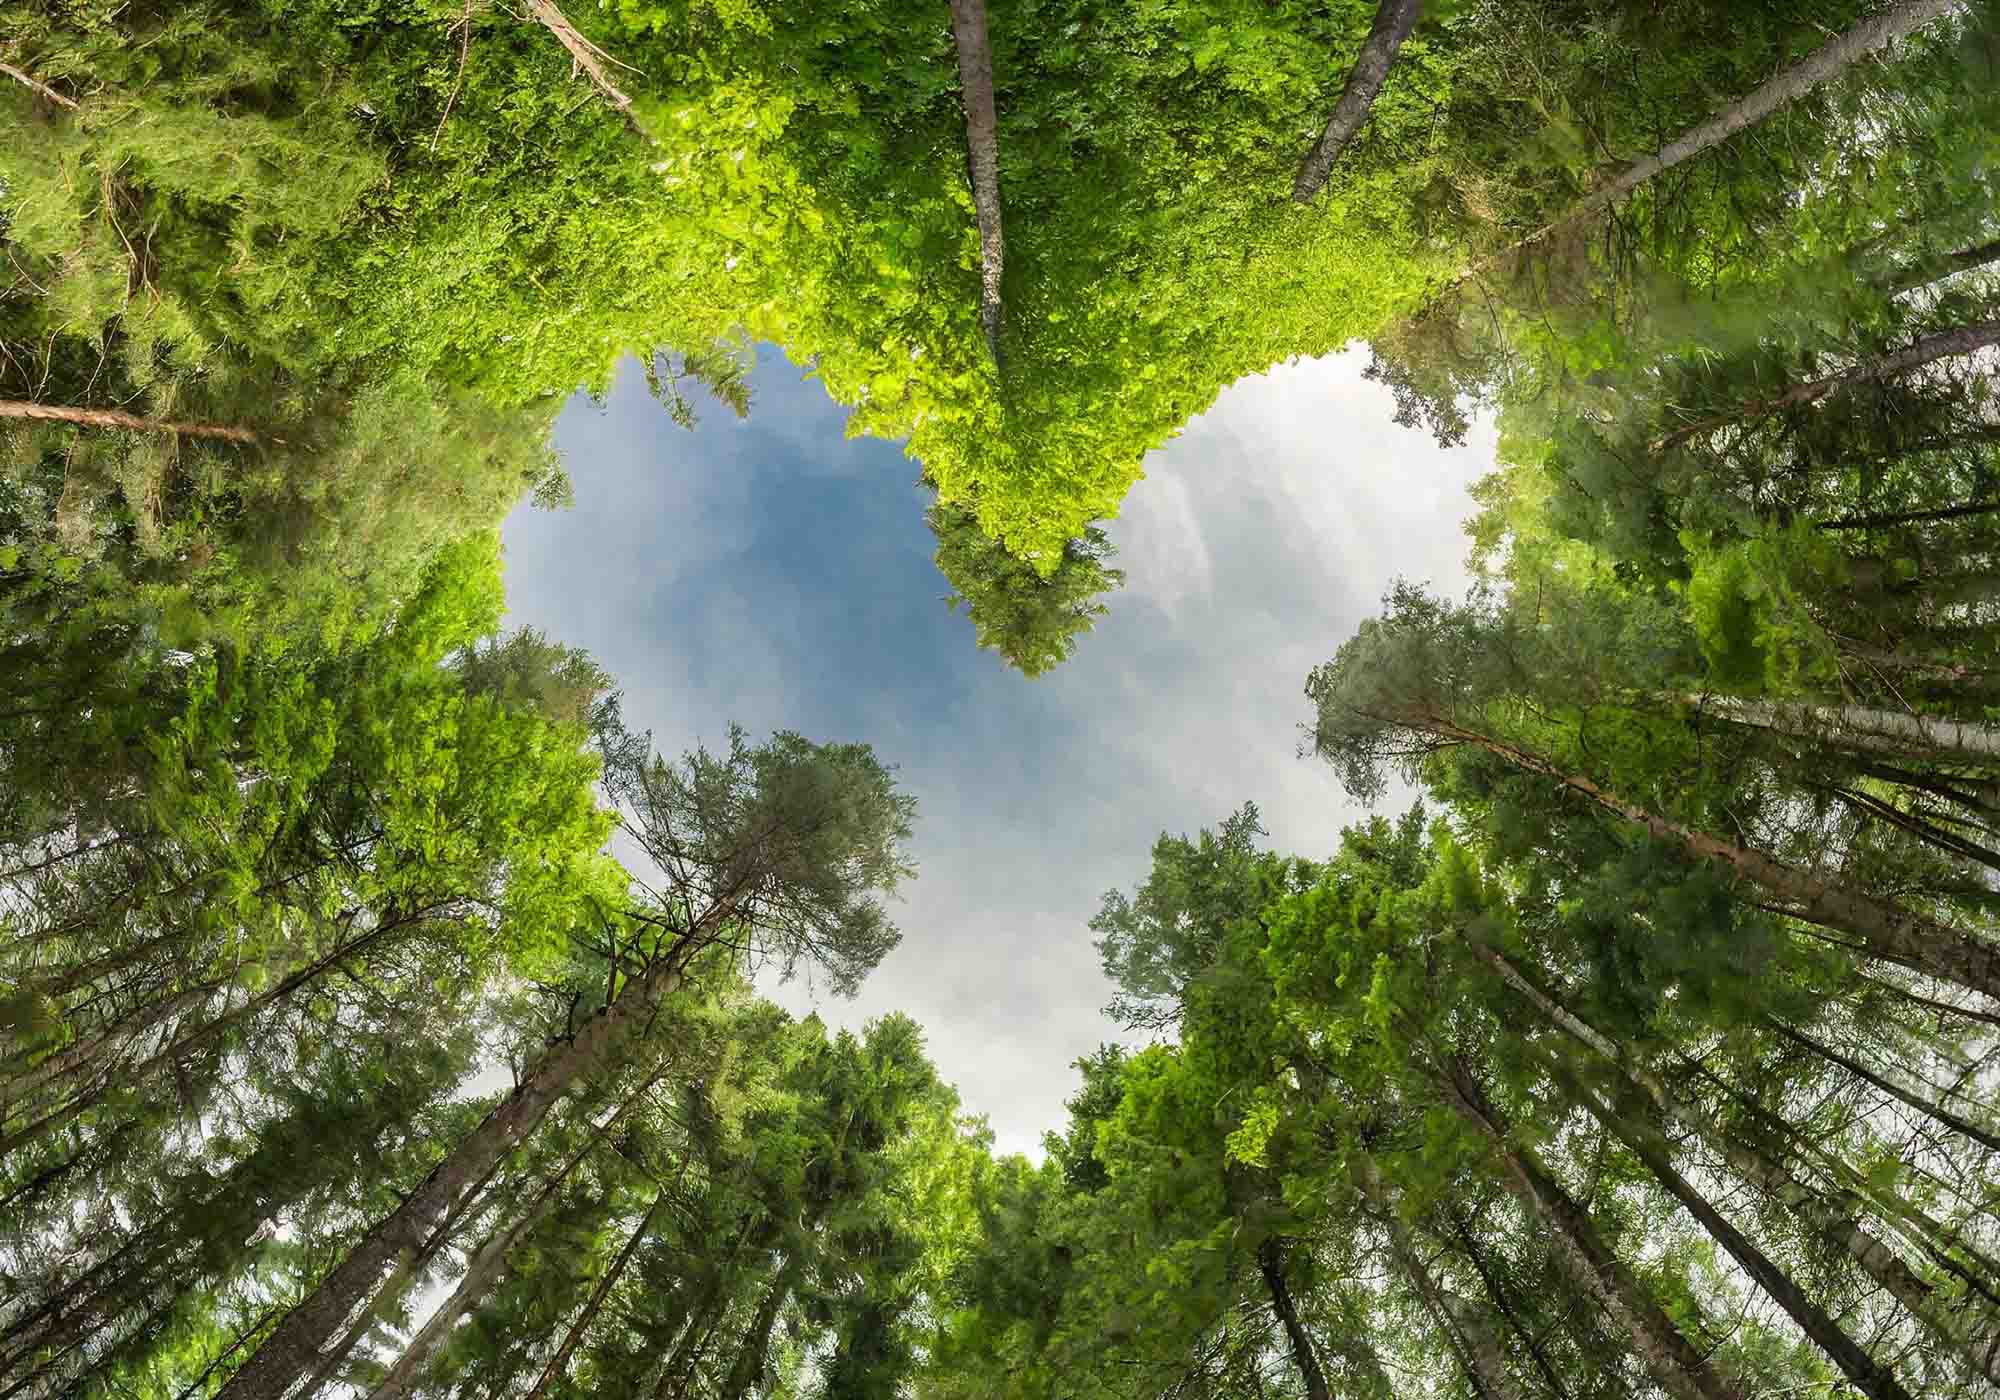 Vista dal basso di un bosco con alberi alti, simbolo dell'impegno di Beliamo per la sostenibilità e la protezione dell'ambiente